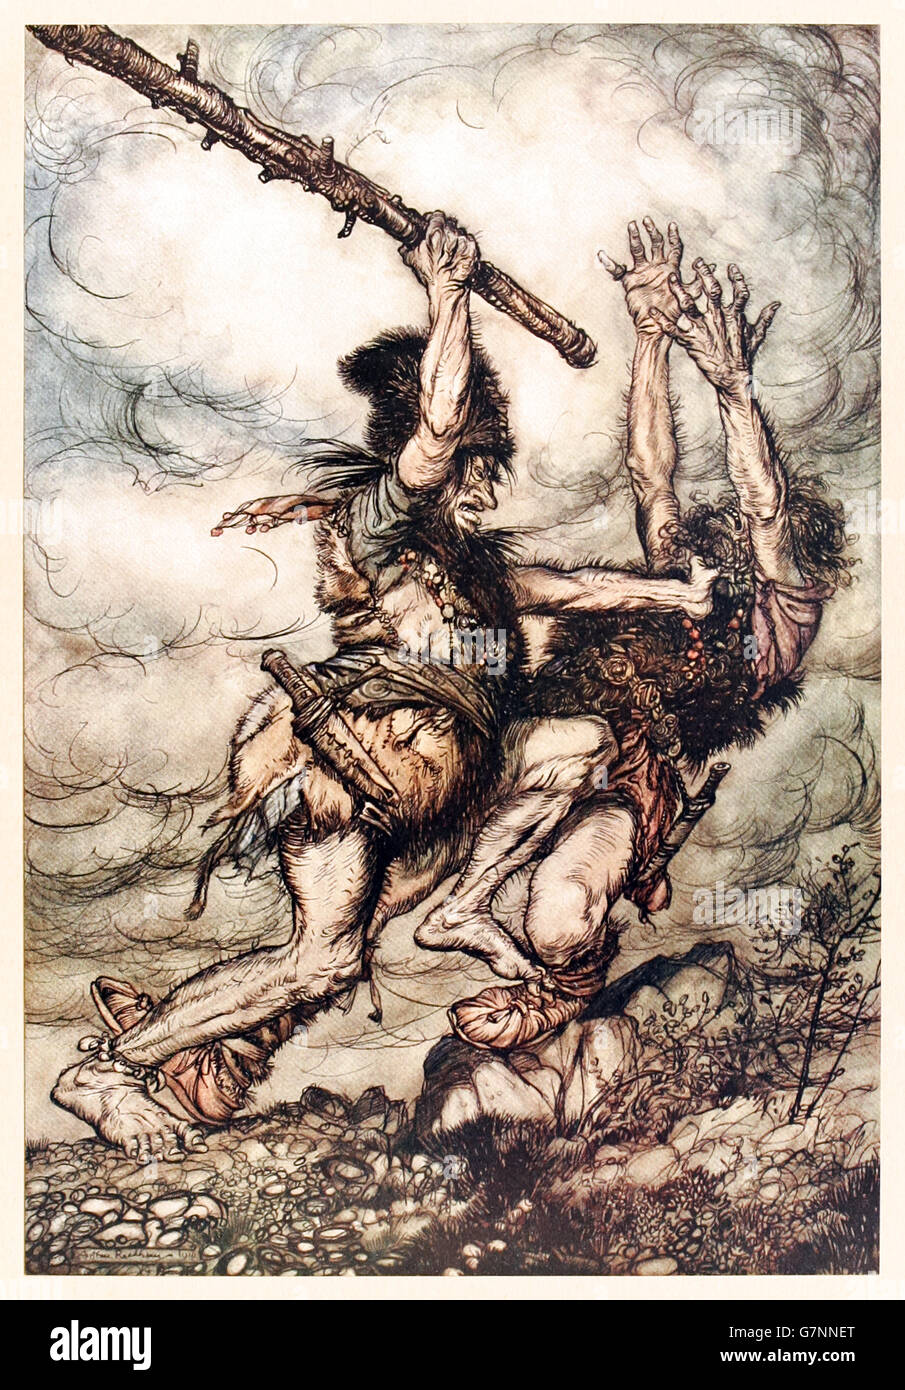 "Fafner mata a Fasolt" de "El Oro del Rhin y la Valquiria' ilustrado por Arthur Rackham (1867-1939), publicado en 1910. Fafner clubes Fasolt a muerte debido a Alberich terrible 'Death-Maldición" en el anillo. Foto de stock